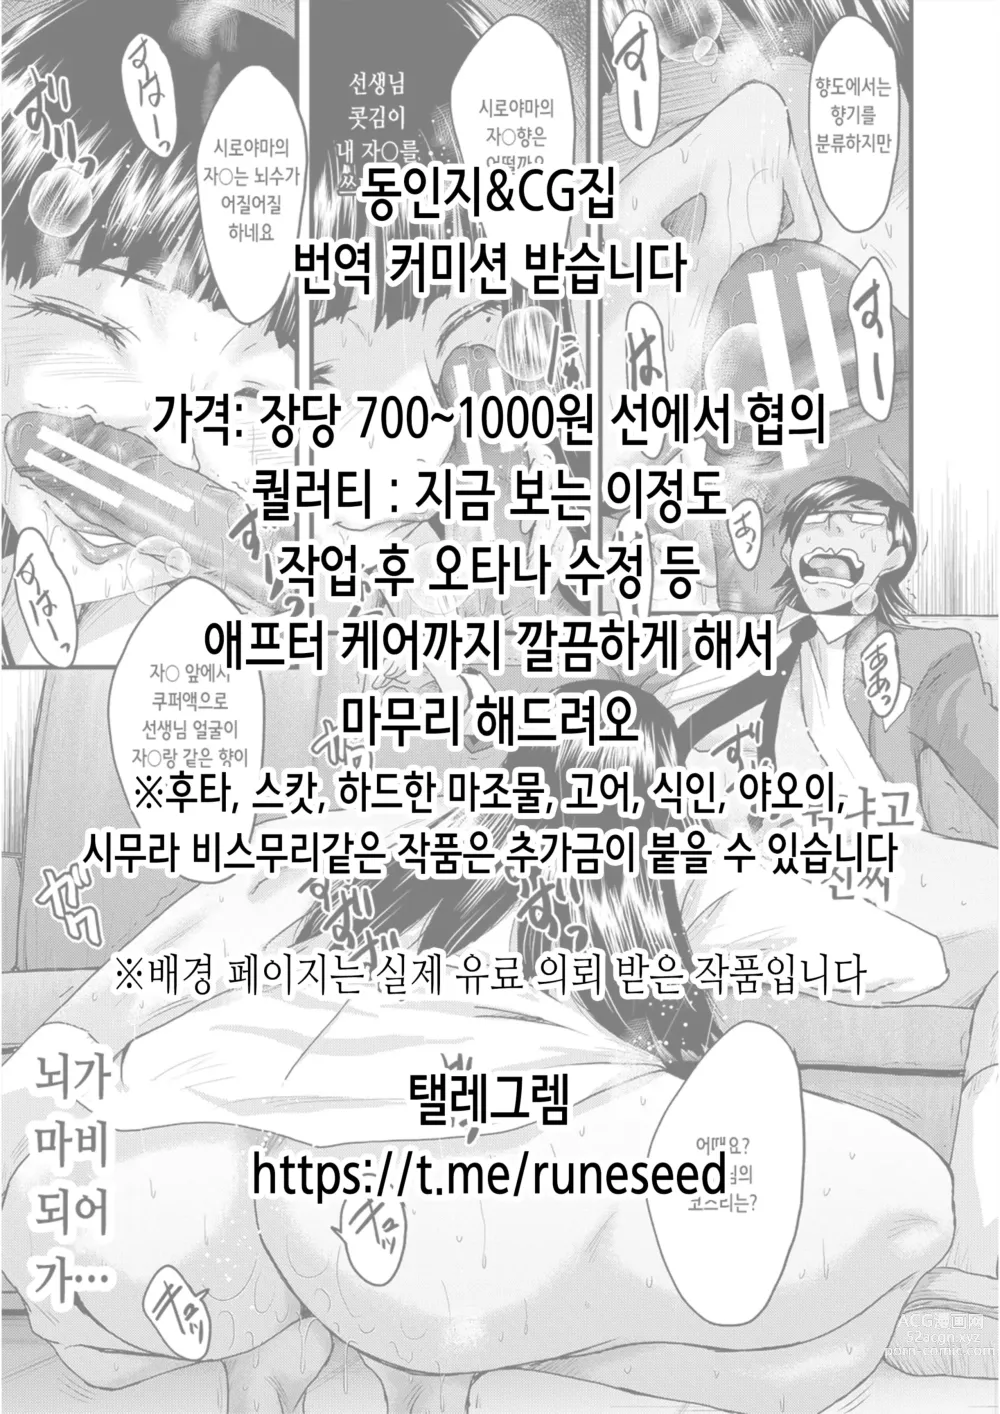 Page 138 of doujinshi 육상부 부장과 부부장은 나의 생 오나홀!!! 츠루요편